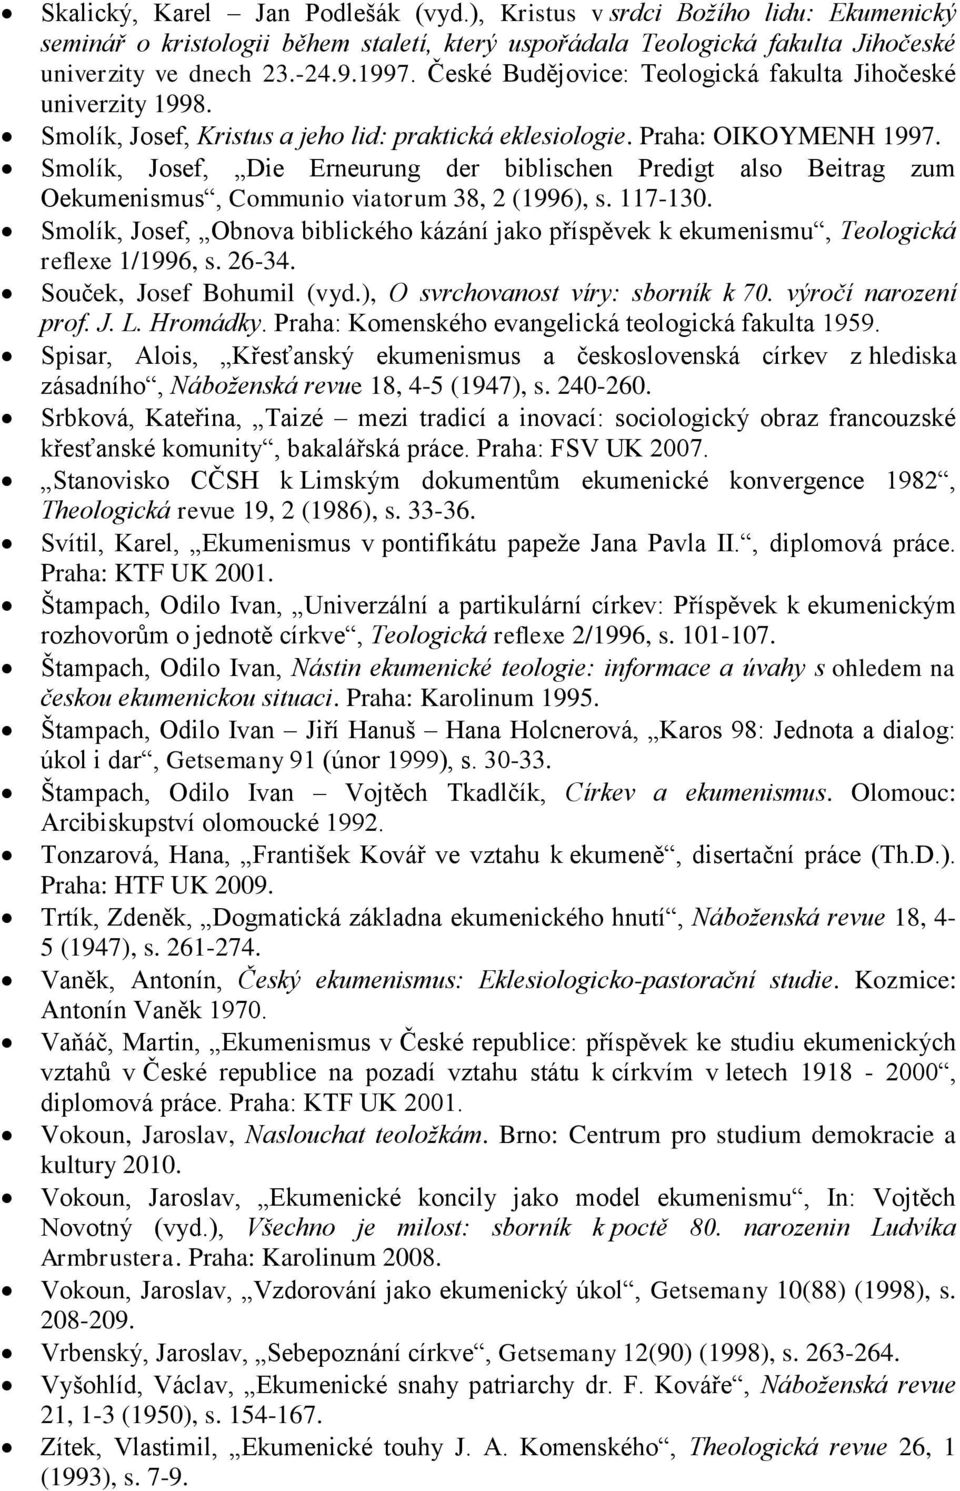 Smolík, Josef, Die Erneurung der biblischen Predigt also Beitrag zum Oekumenismus, Communio viatorum 38, 2 (1996), s. 117-130.